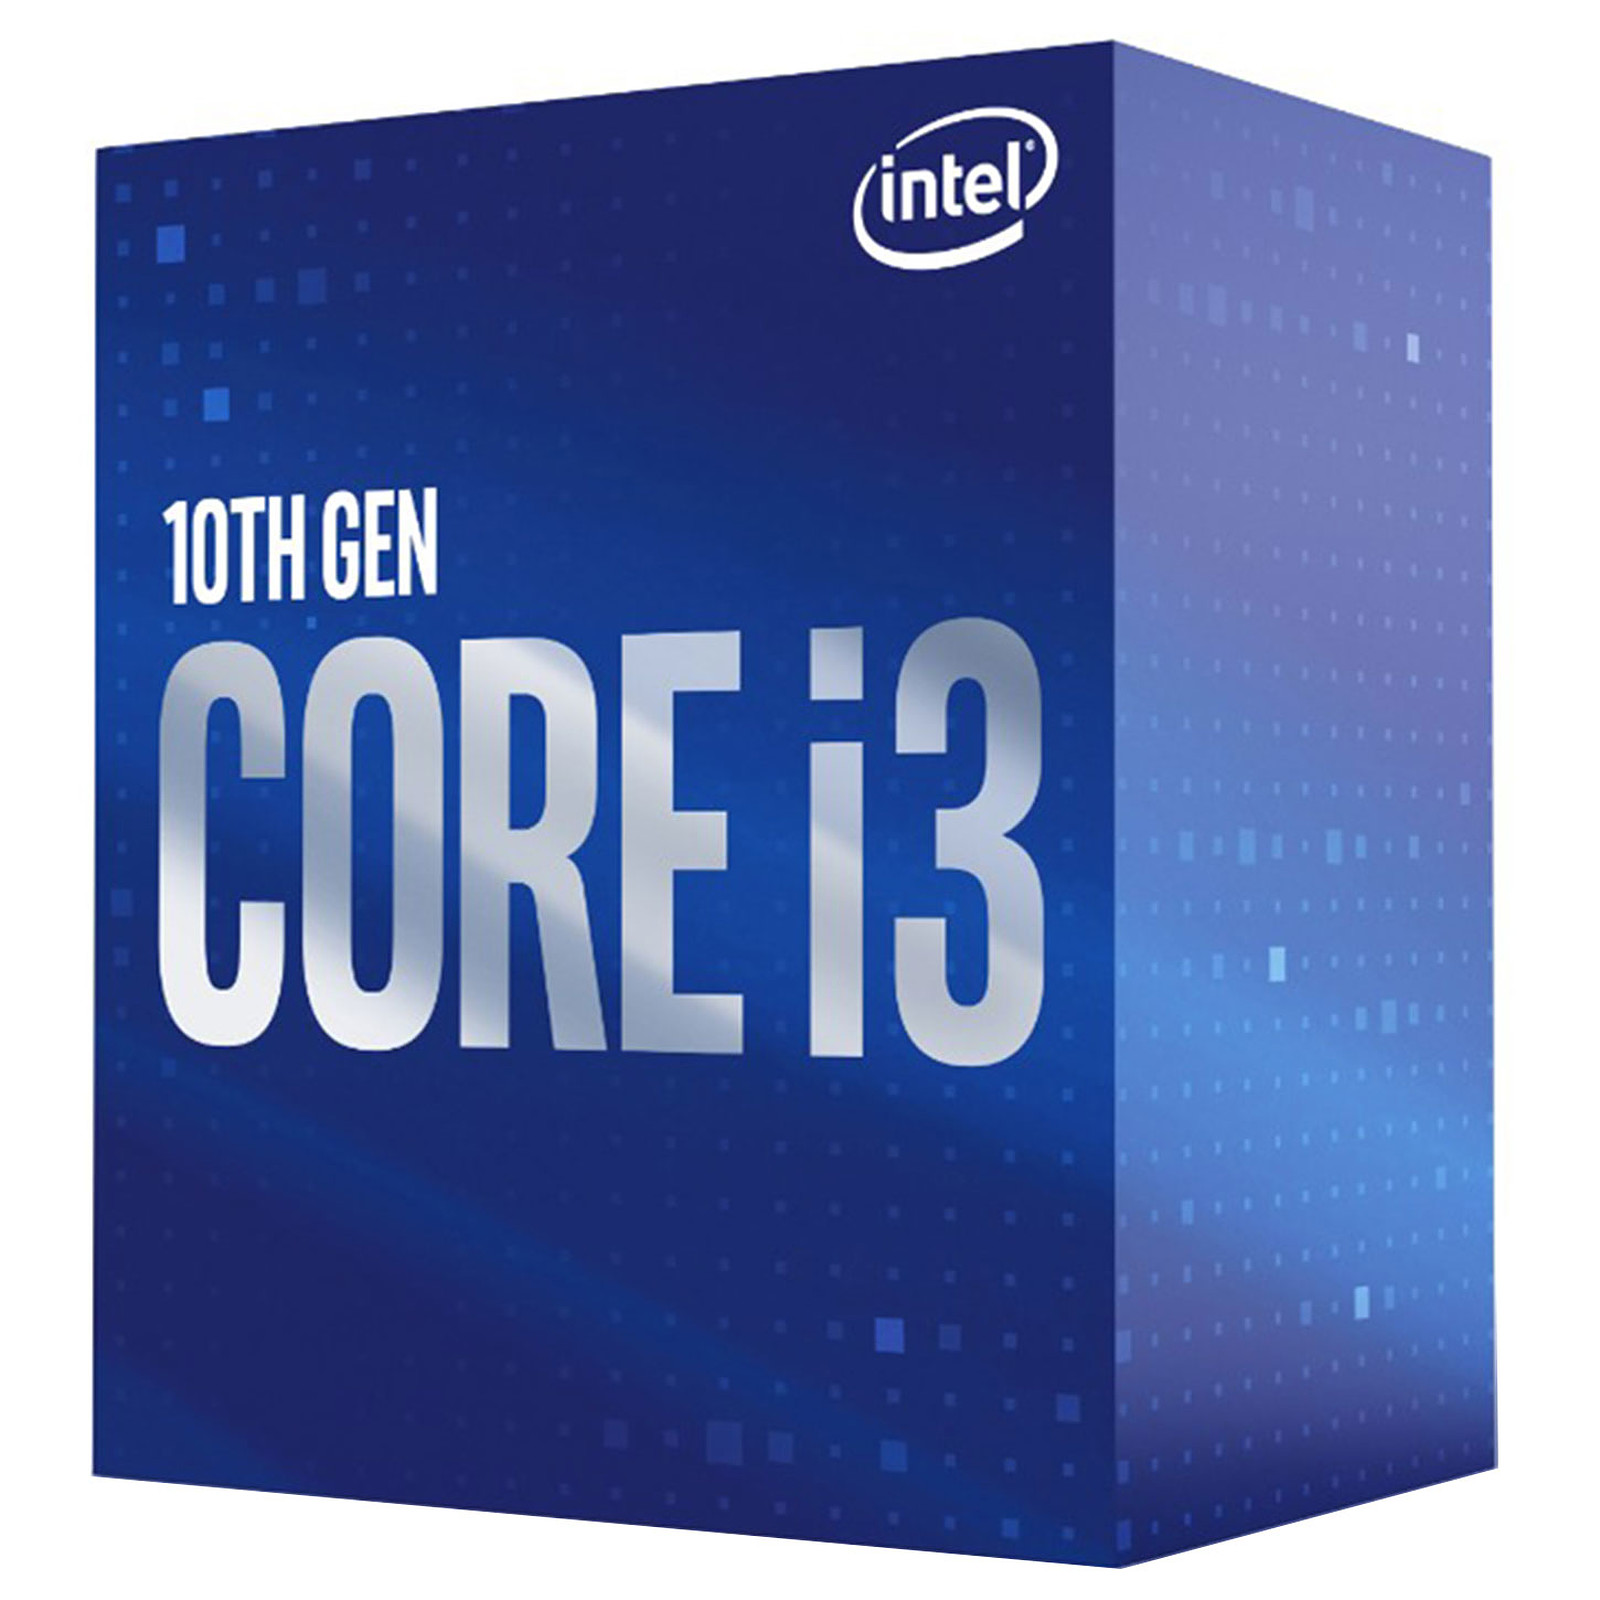 Intel Core i3 12100F (3.3 GHz / 4.3 GHz) Processeurs Intel Maroc